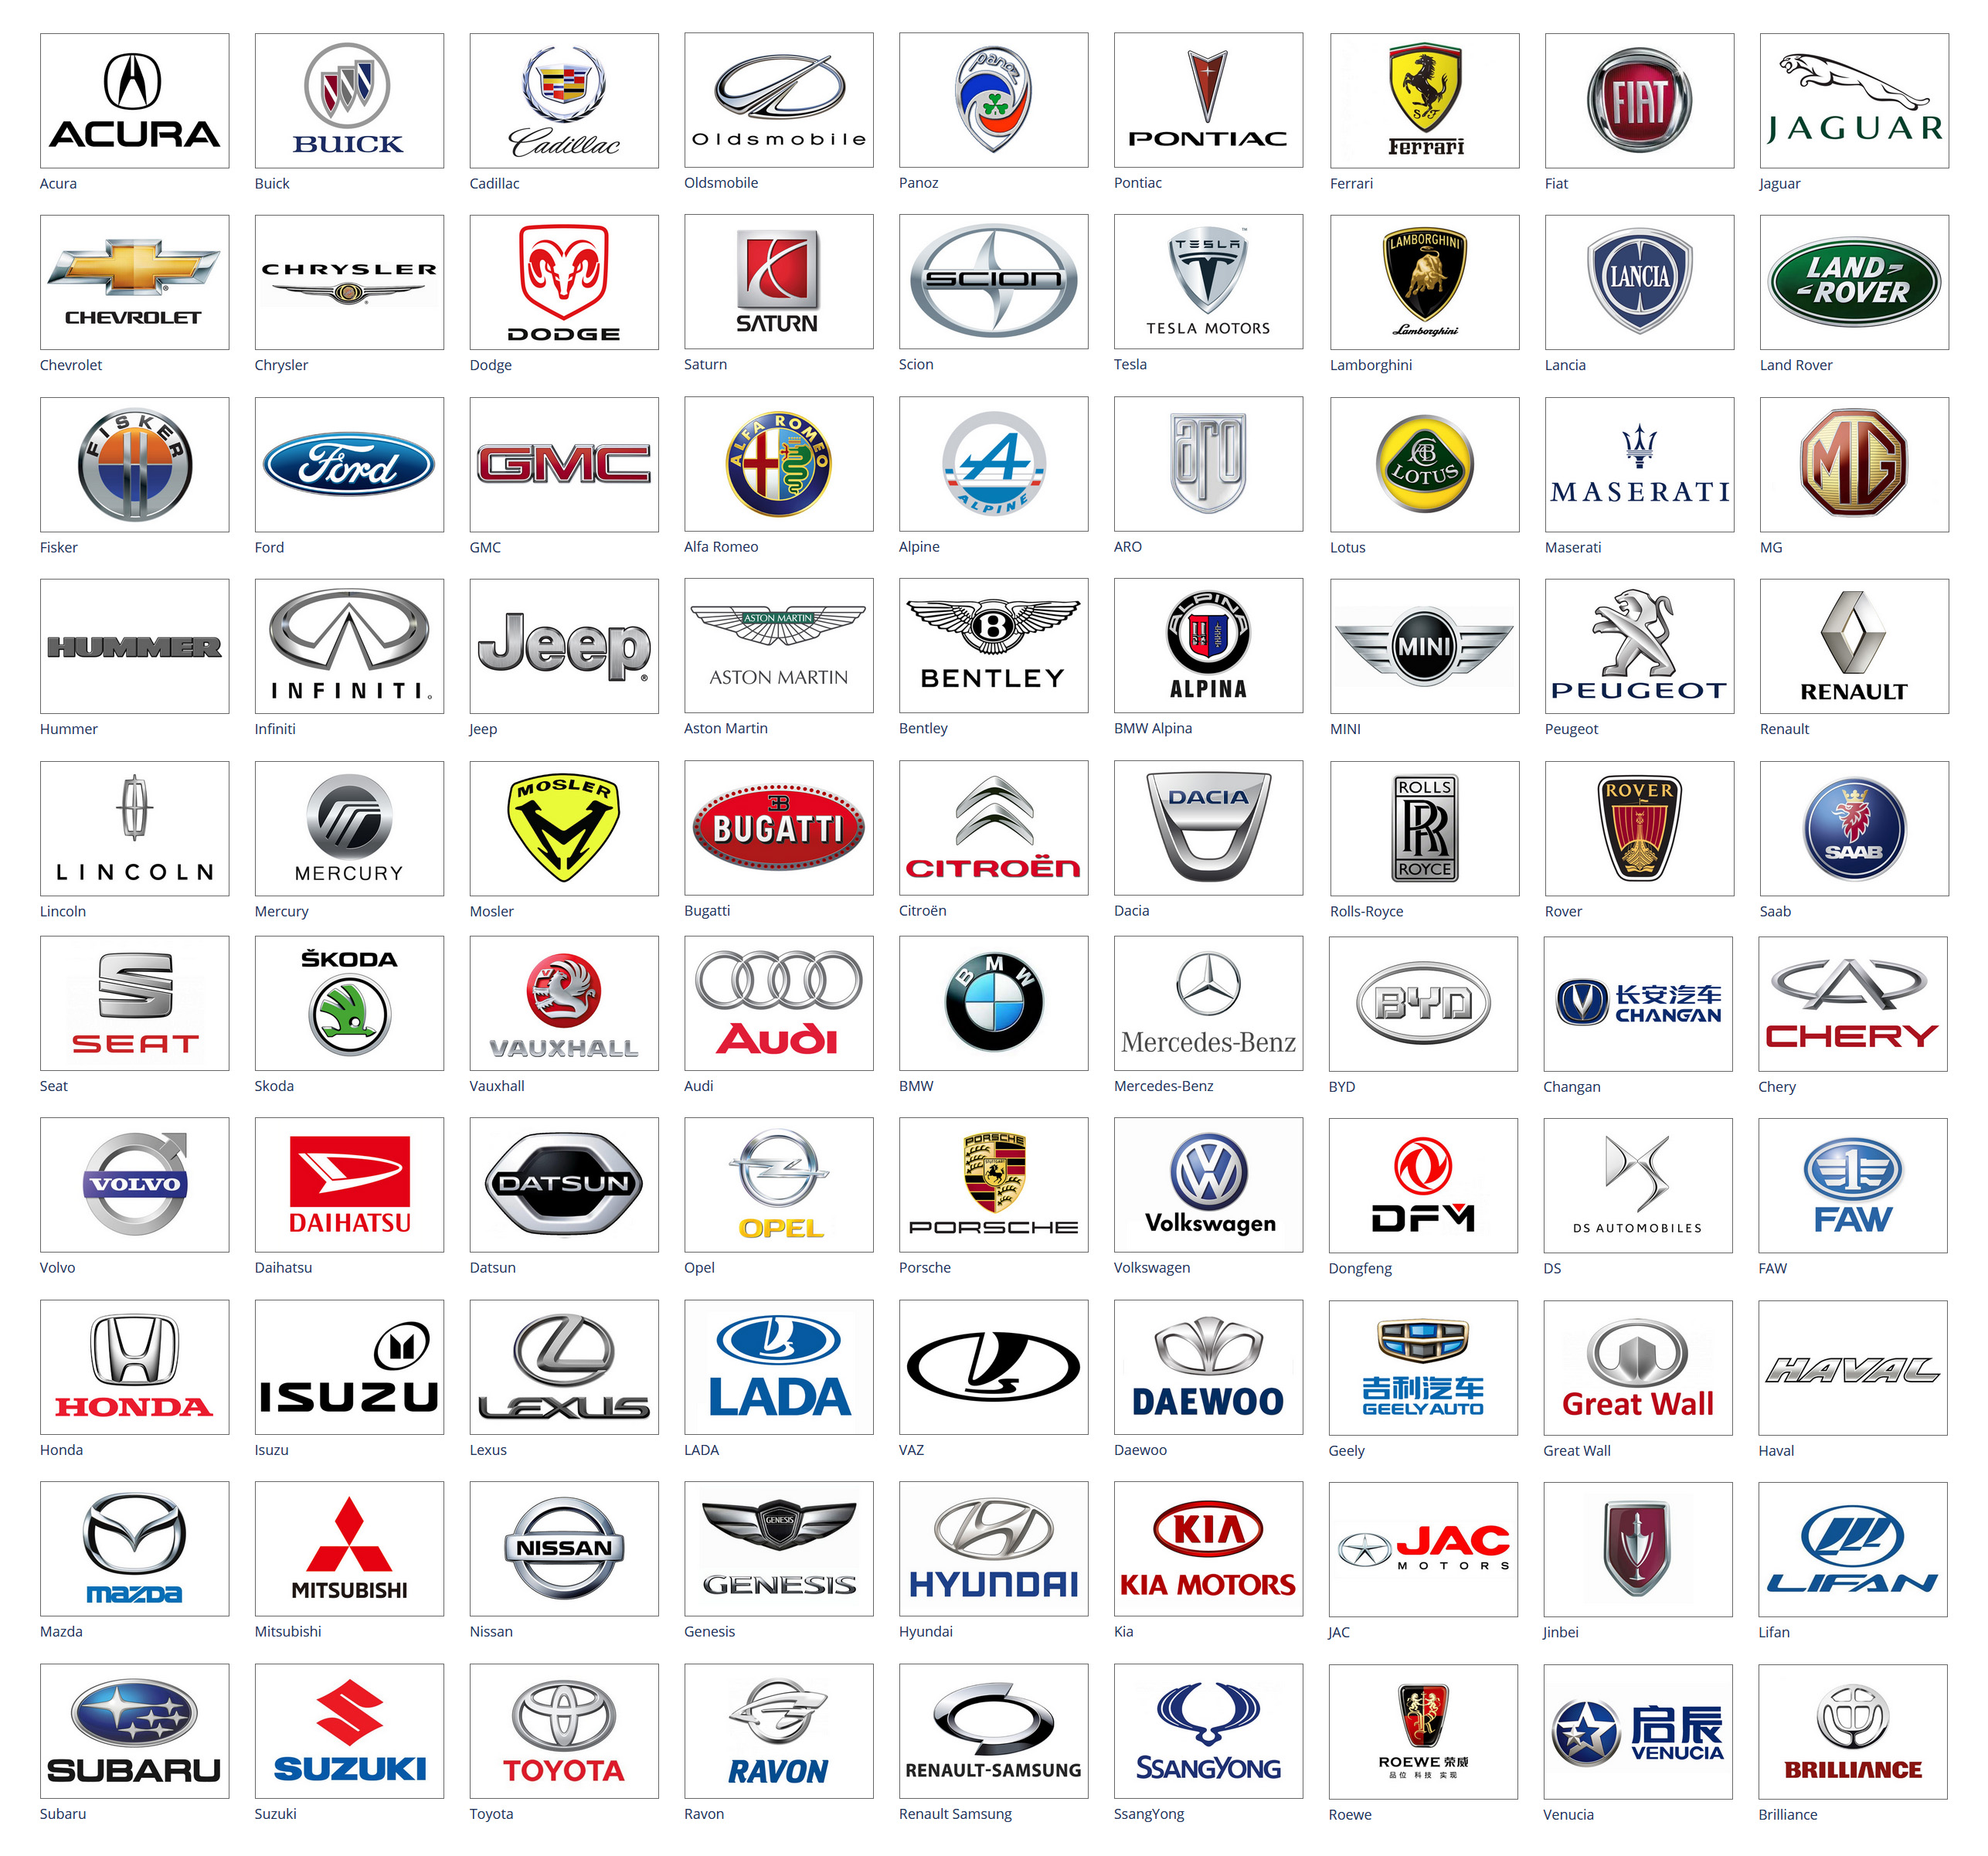 2013Opel Corsa - Tamaños de ruedas y neumáticos, PCD, Desplazamiento y  especificaciones de las llantas